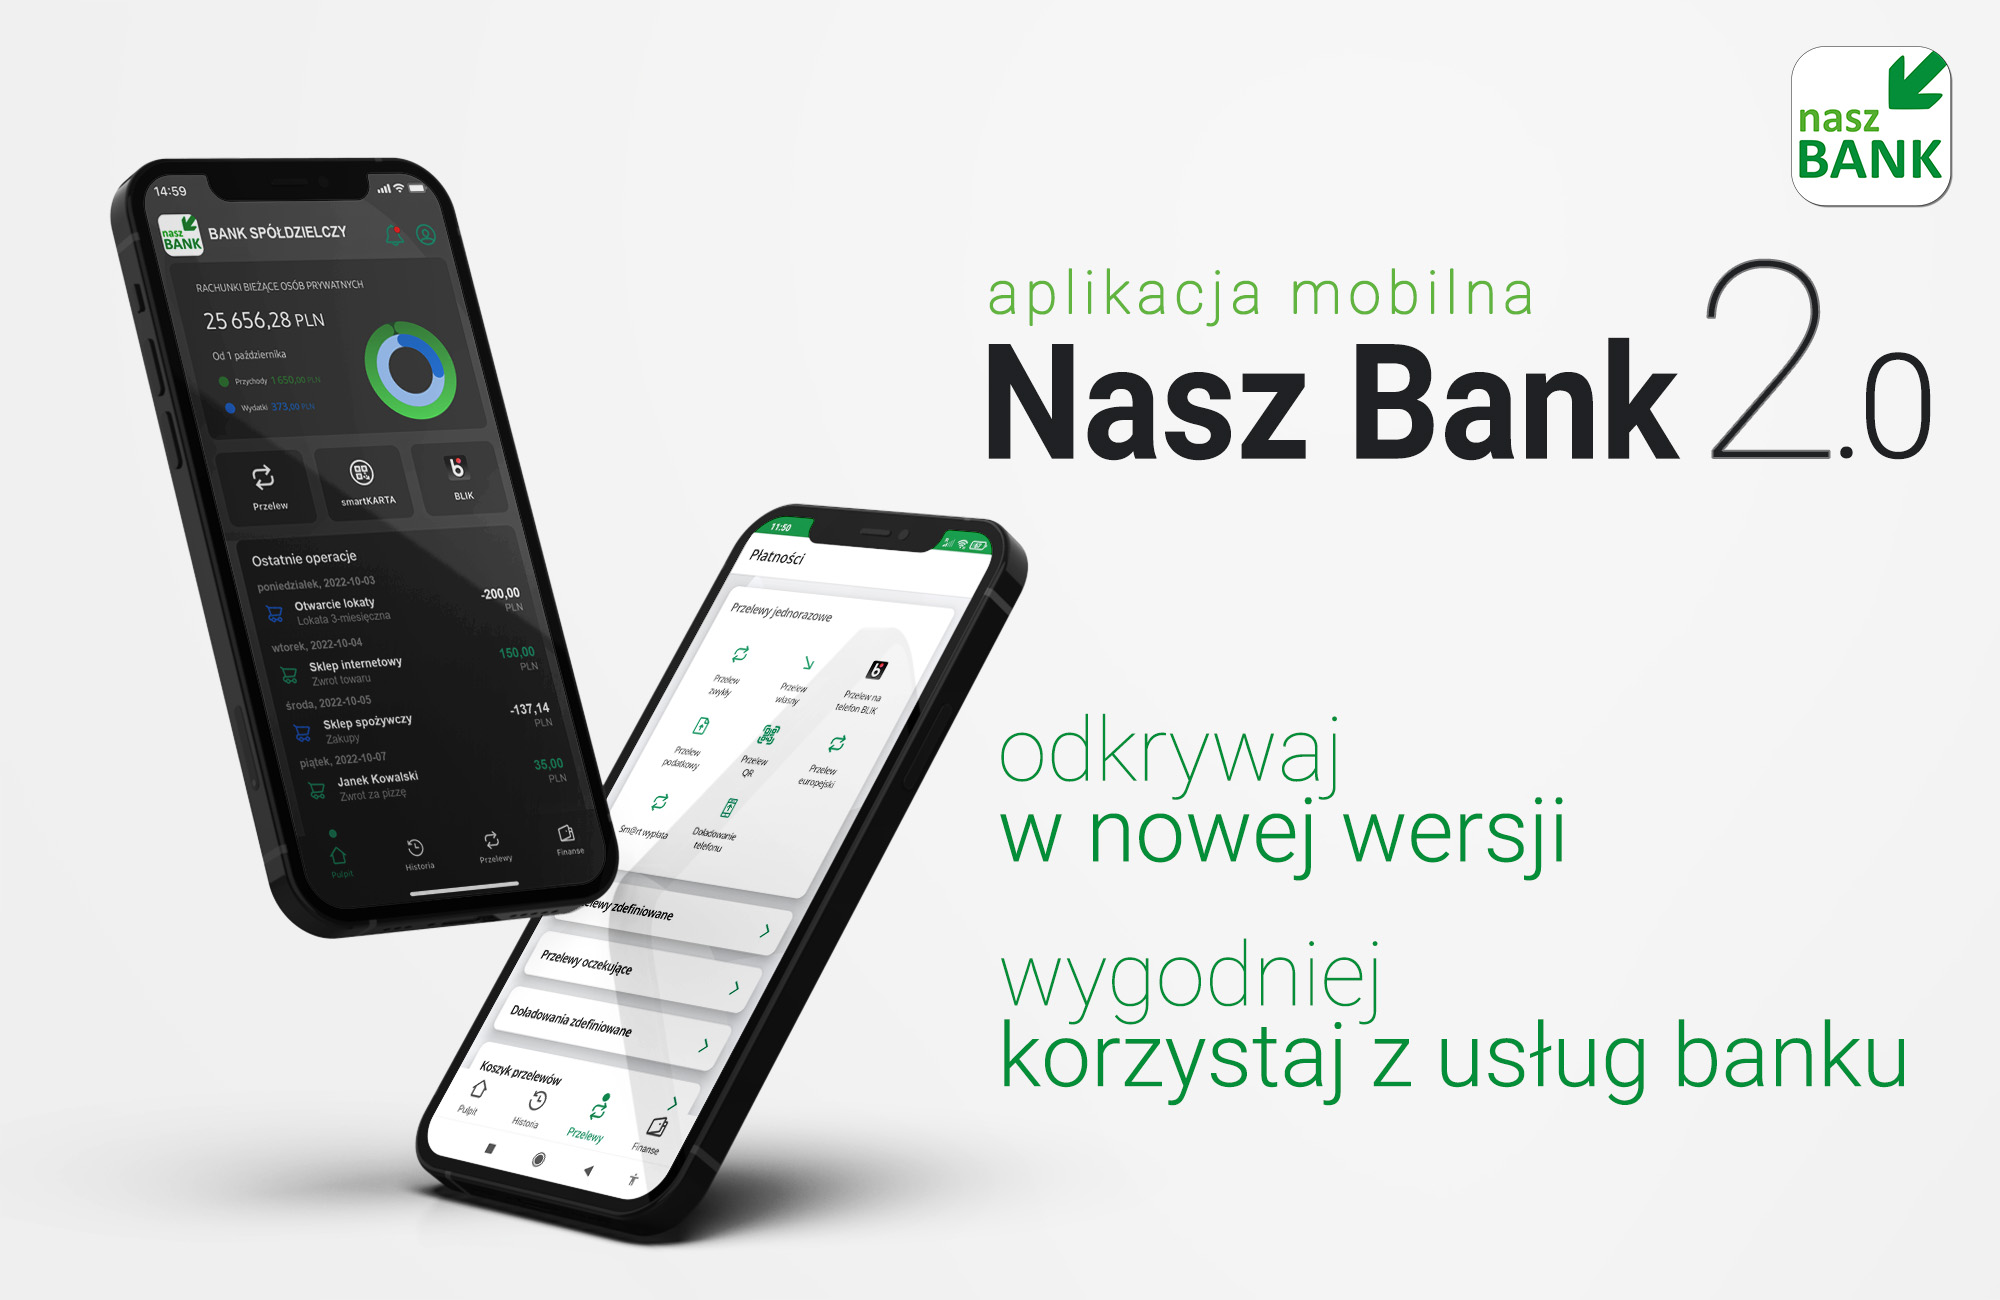 NaszBank2